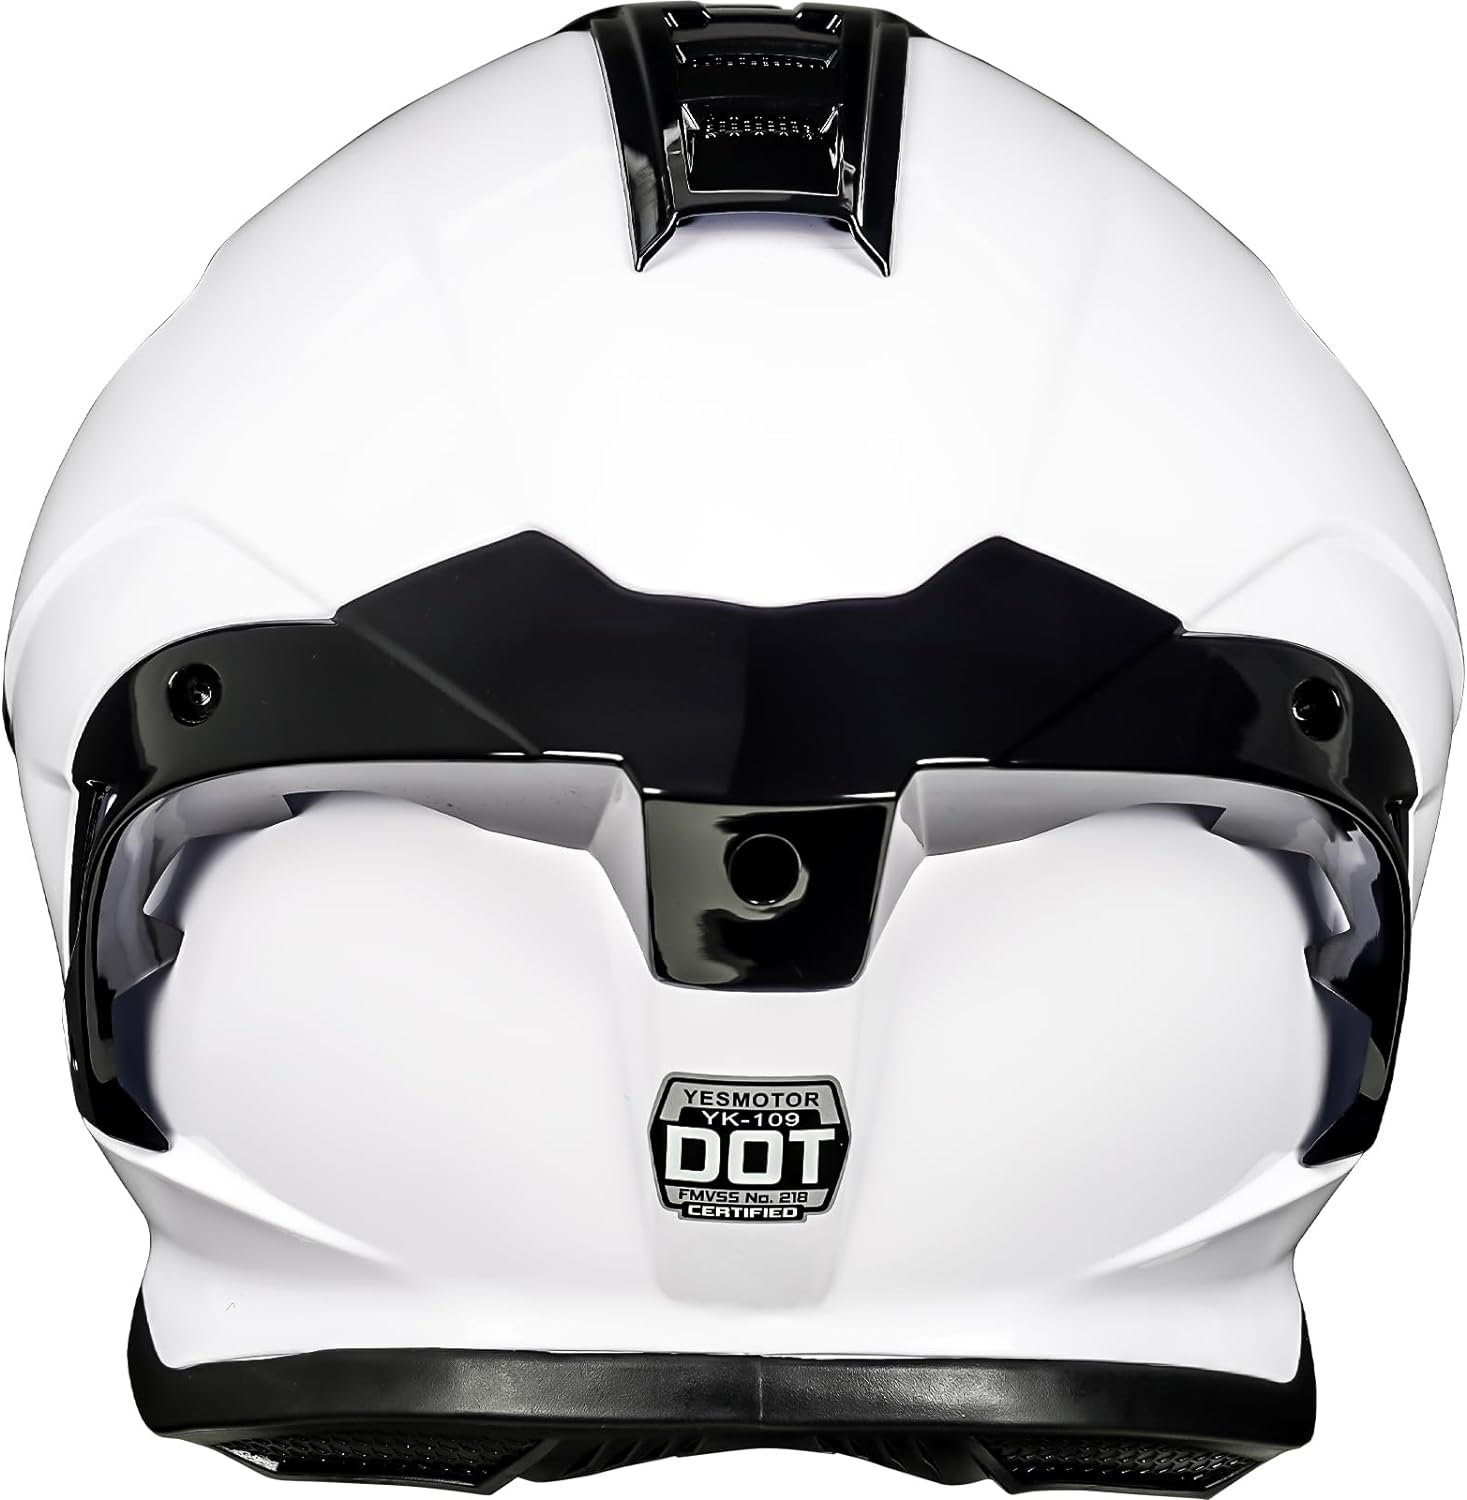 Yesmotor Full Face Helmet Review